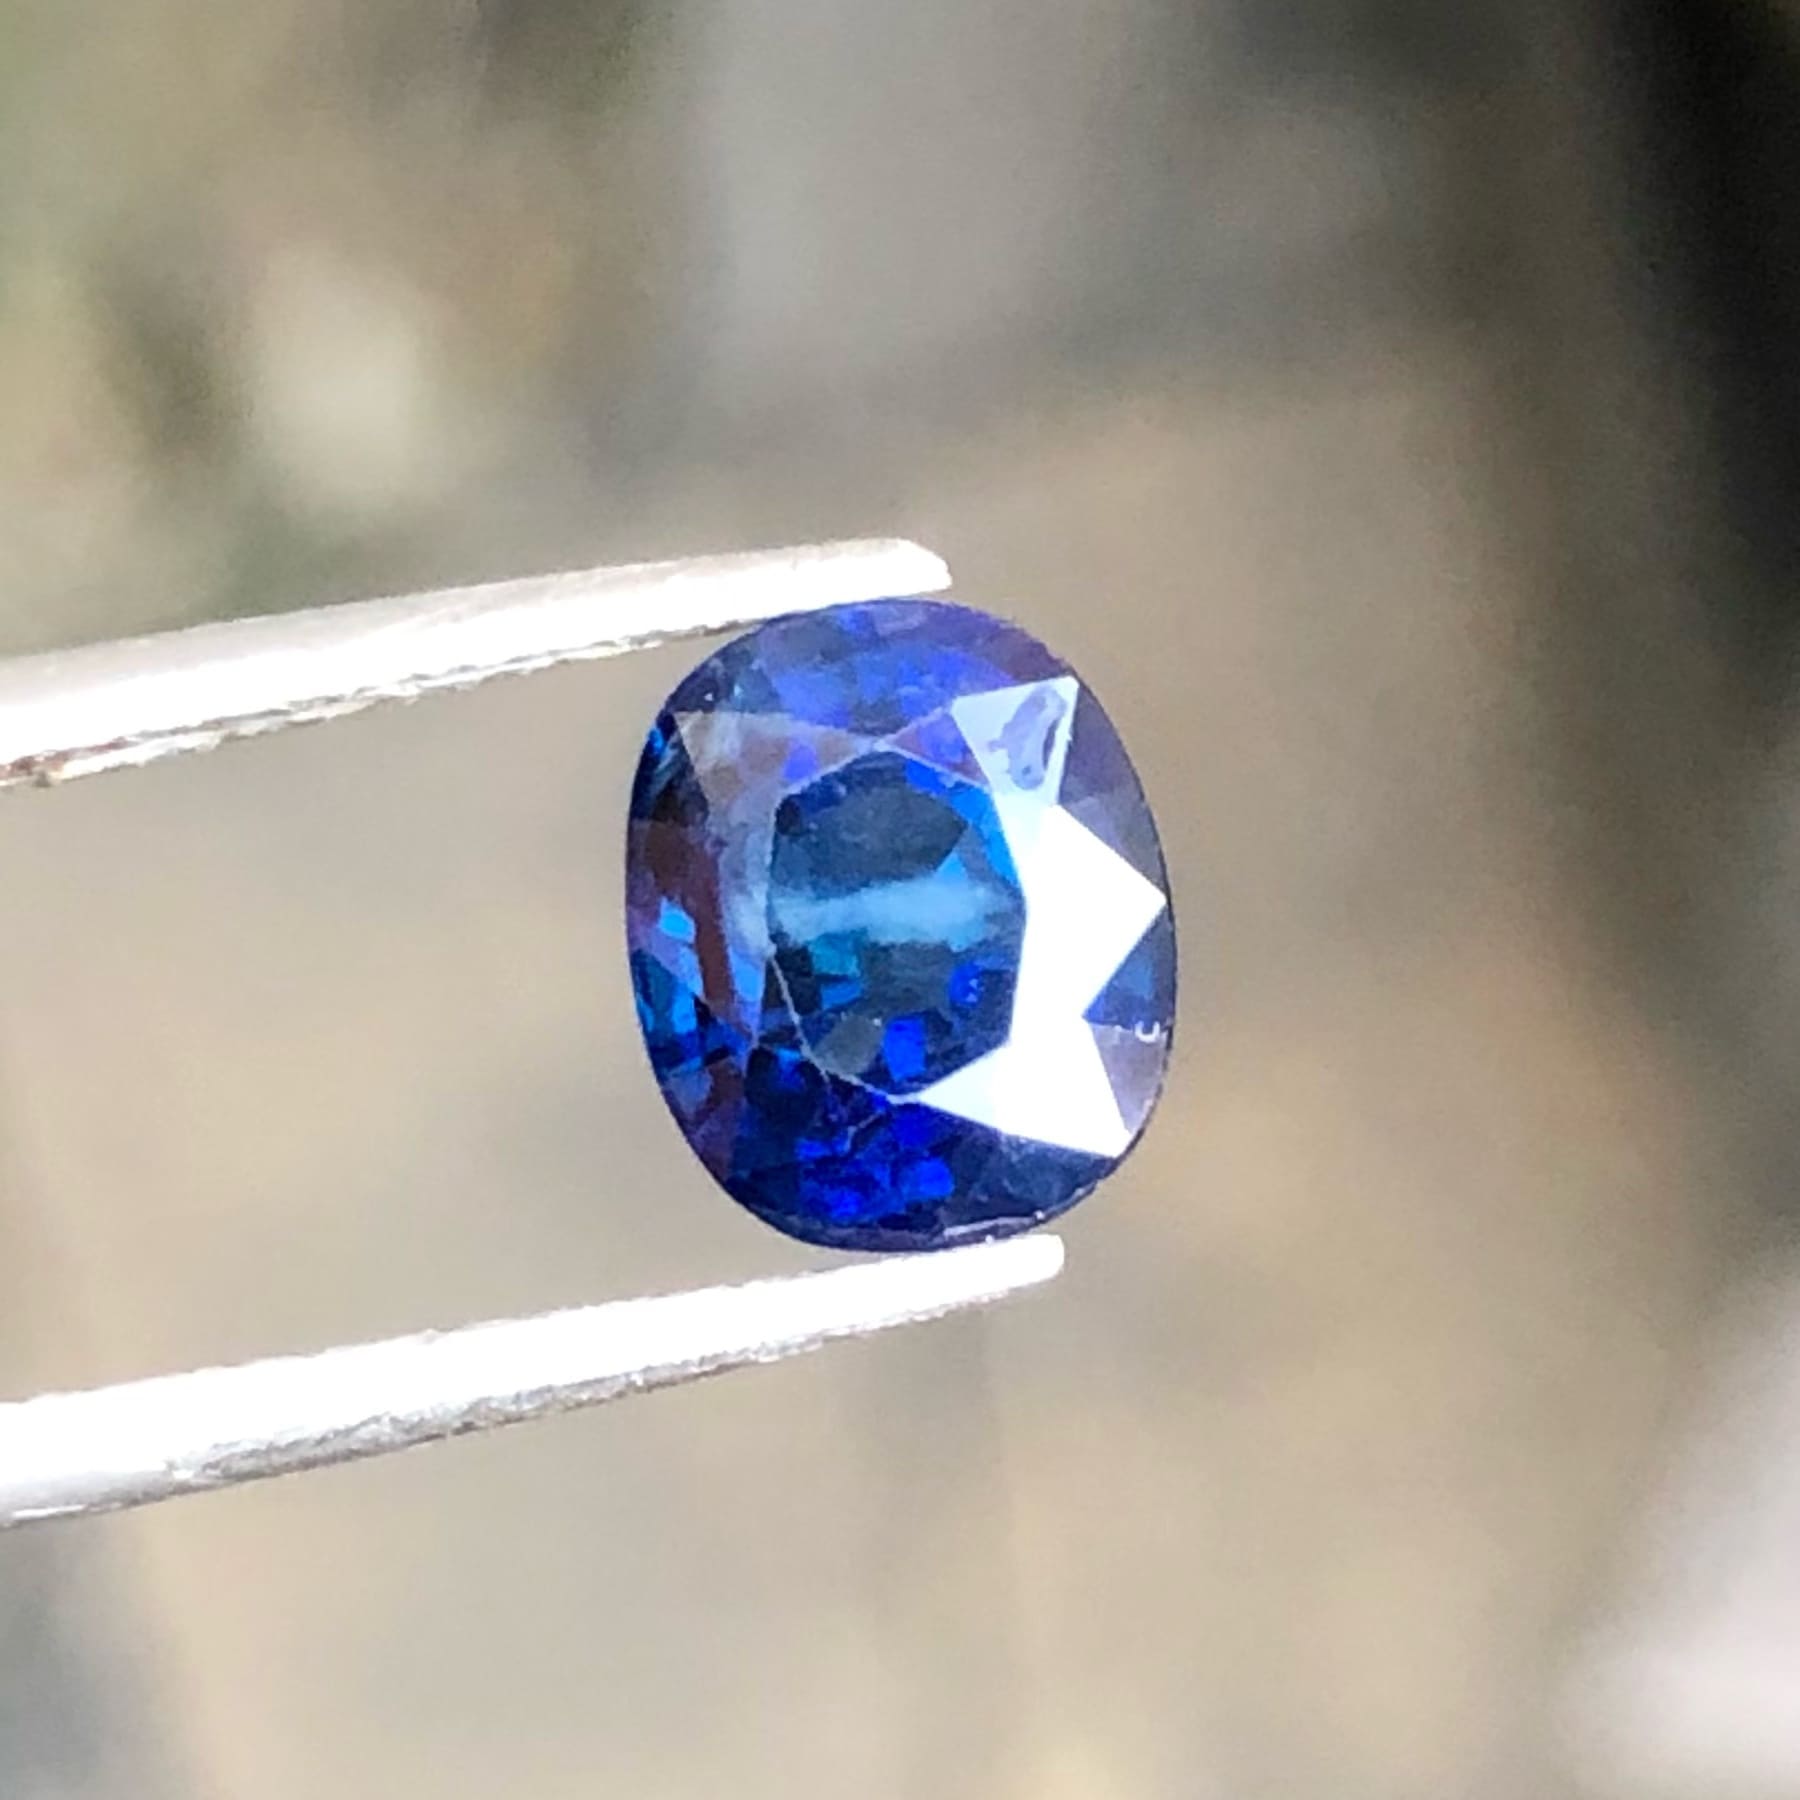 2.09 carats Natural Cobalt Blue Sapphire